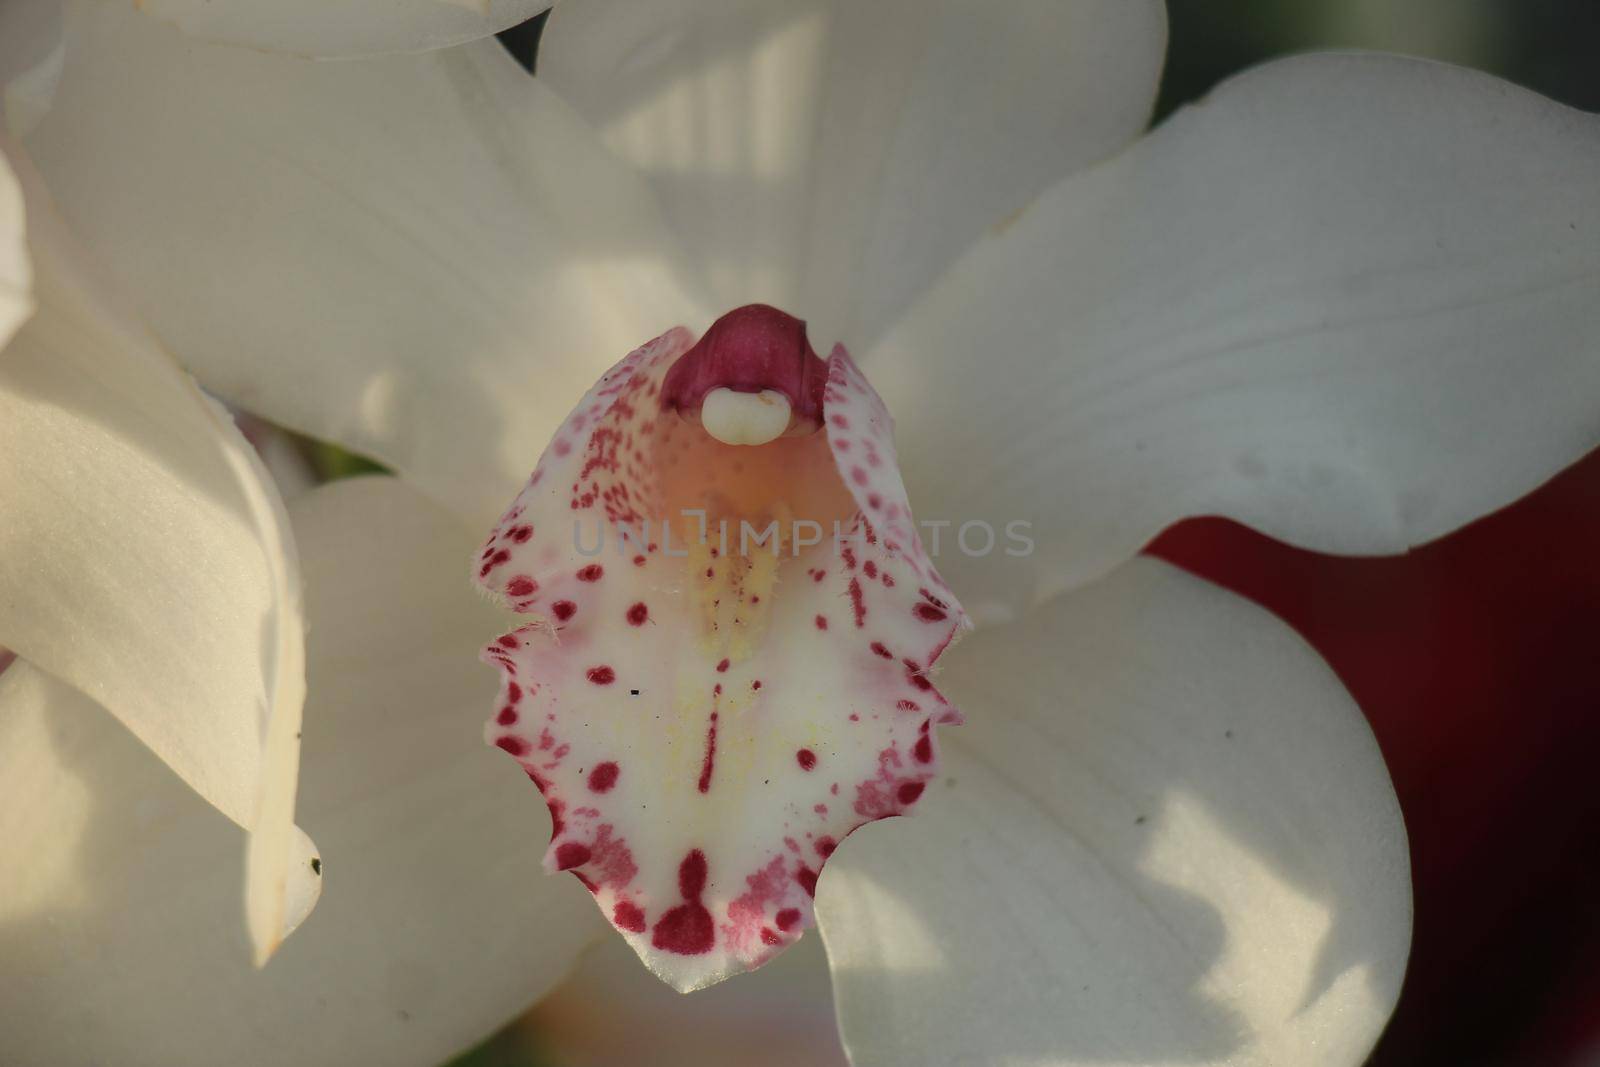 White Cymbidium orchids in a bridal floral arrangement